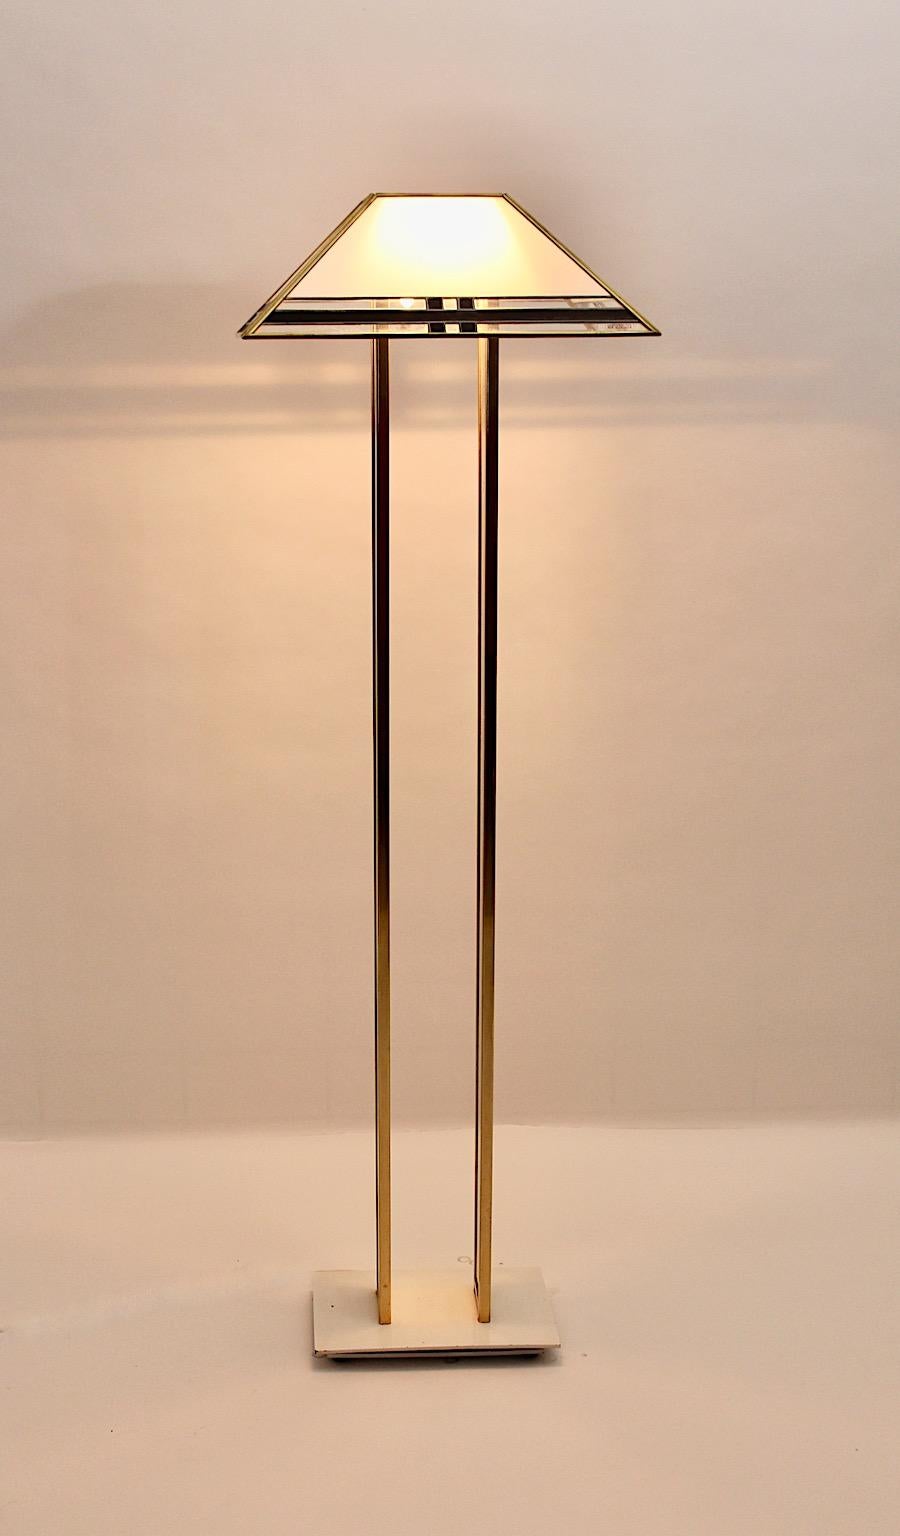 Italienische Stehlampe im modernen Hollywood-Regency-Stil aus Metall, Lucit und Plexiglas von Albano Poli für Poliarte 1970er Jahre Italien.
Die wunderbare Stehleuchte von Albano Poli hat einen abnehmbaren Lampenschirm aus vermessingtem Metall,